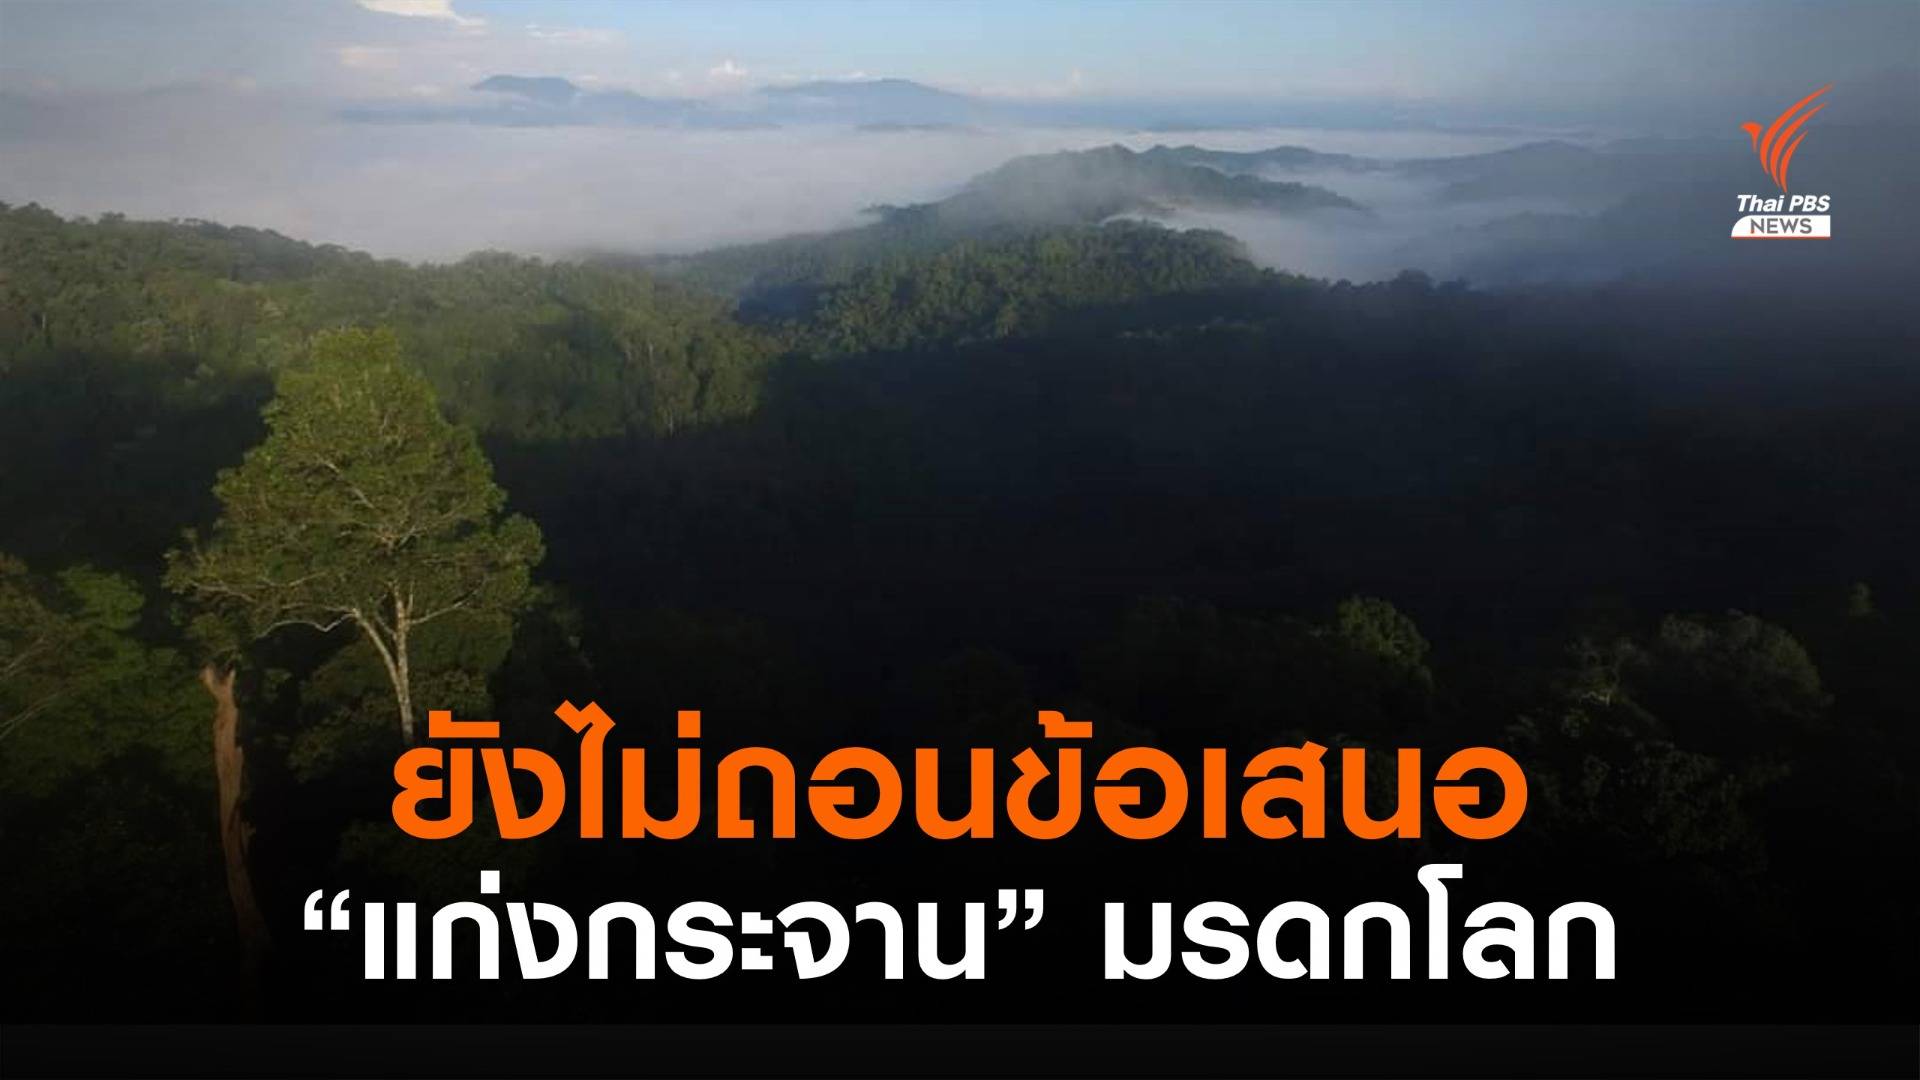 ทส.สยบข่าวไทยถอนตัว  IUCN ยังเสนอ "แก่งกระจาน" เป็นมรดกโลก